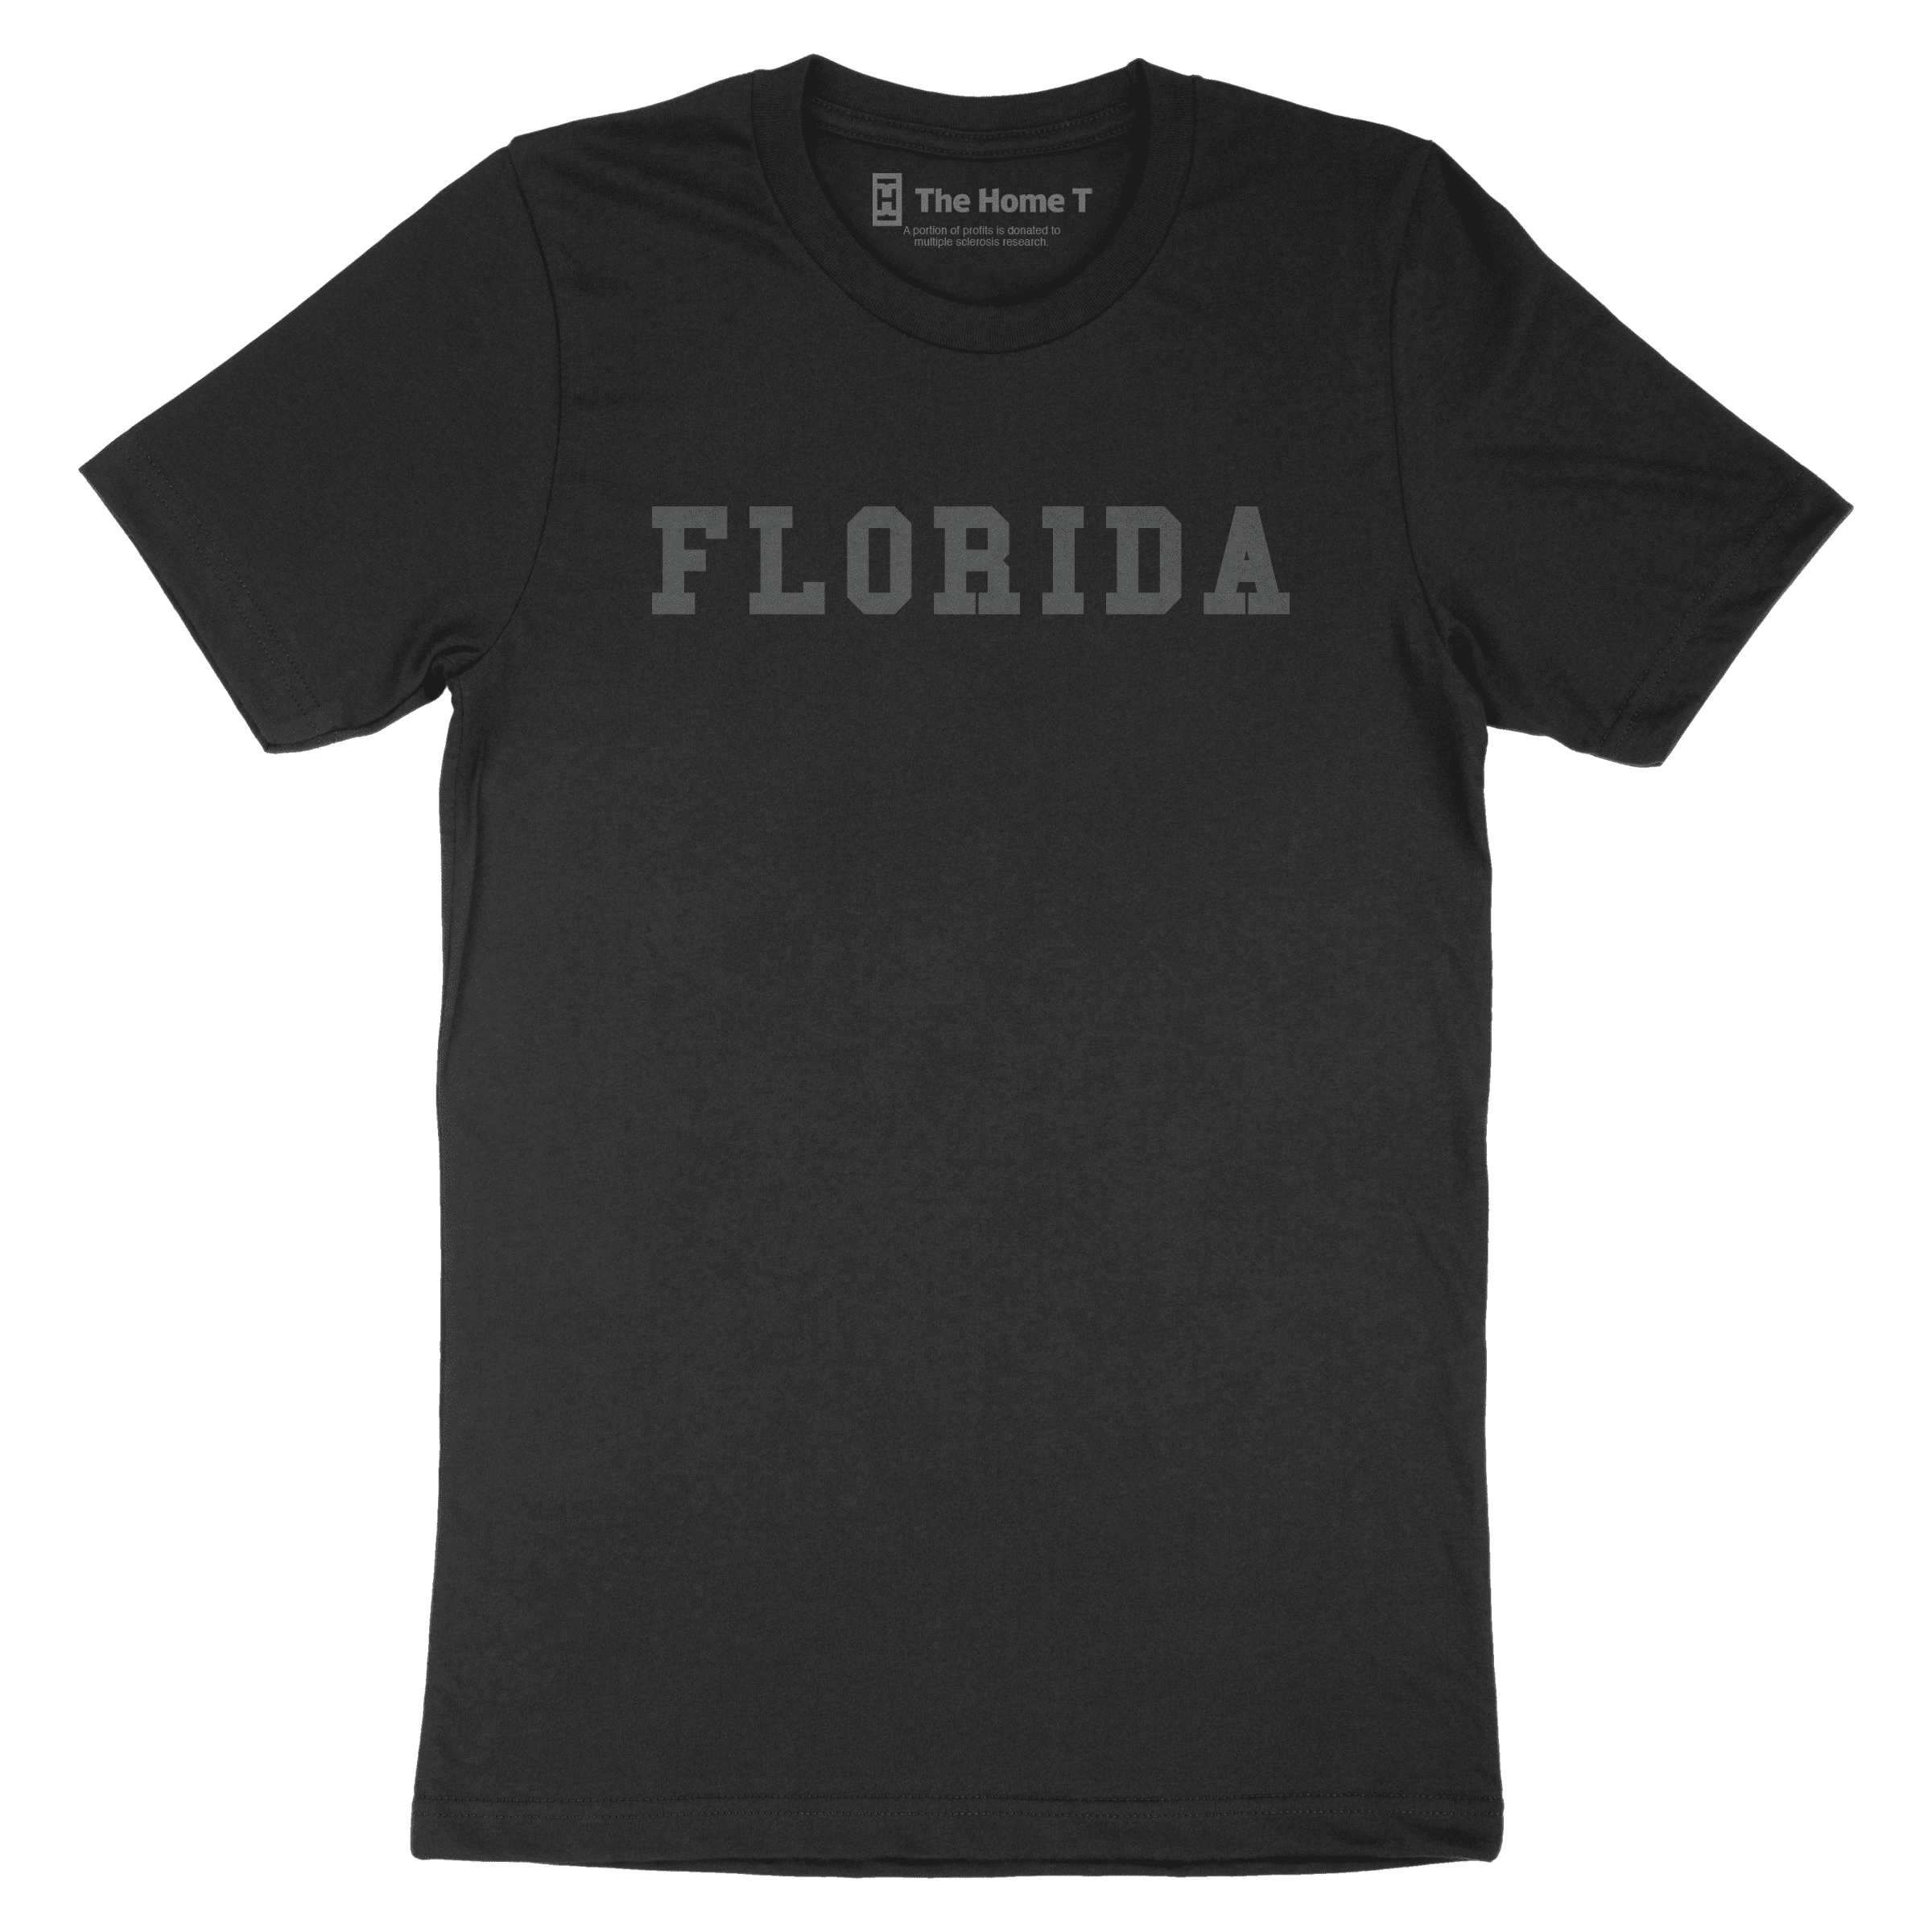 Florida Black on Black